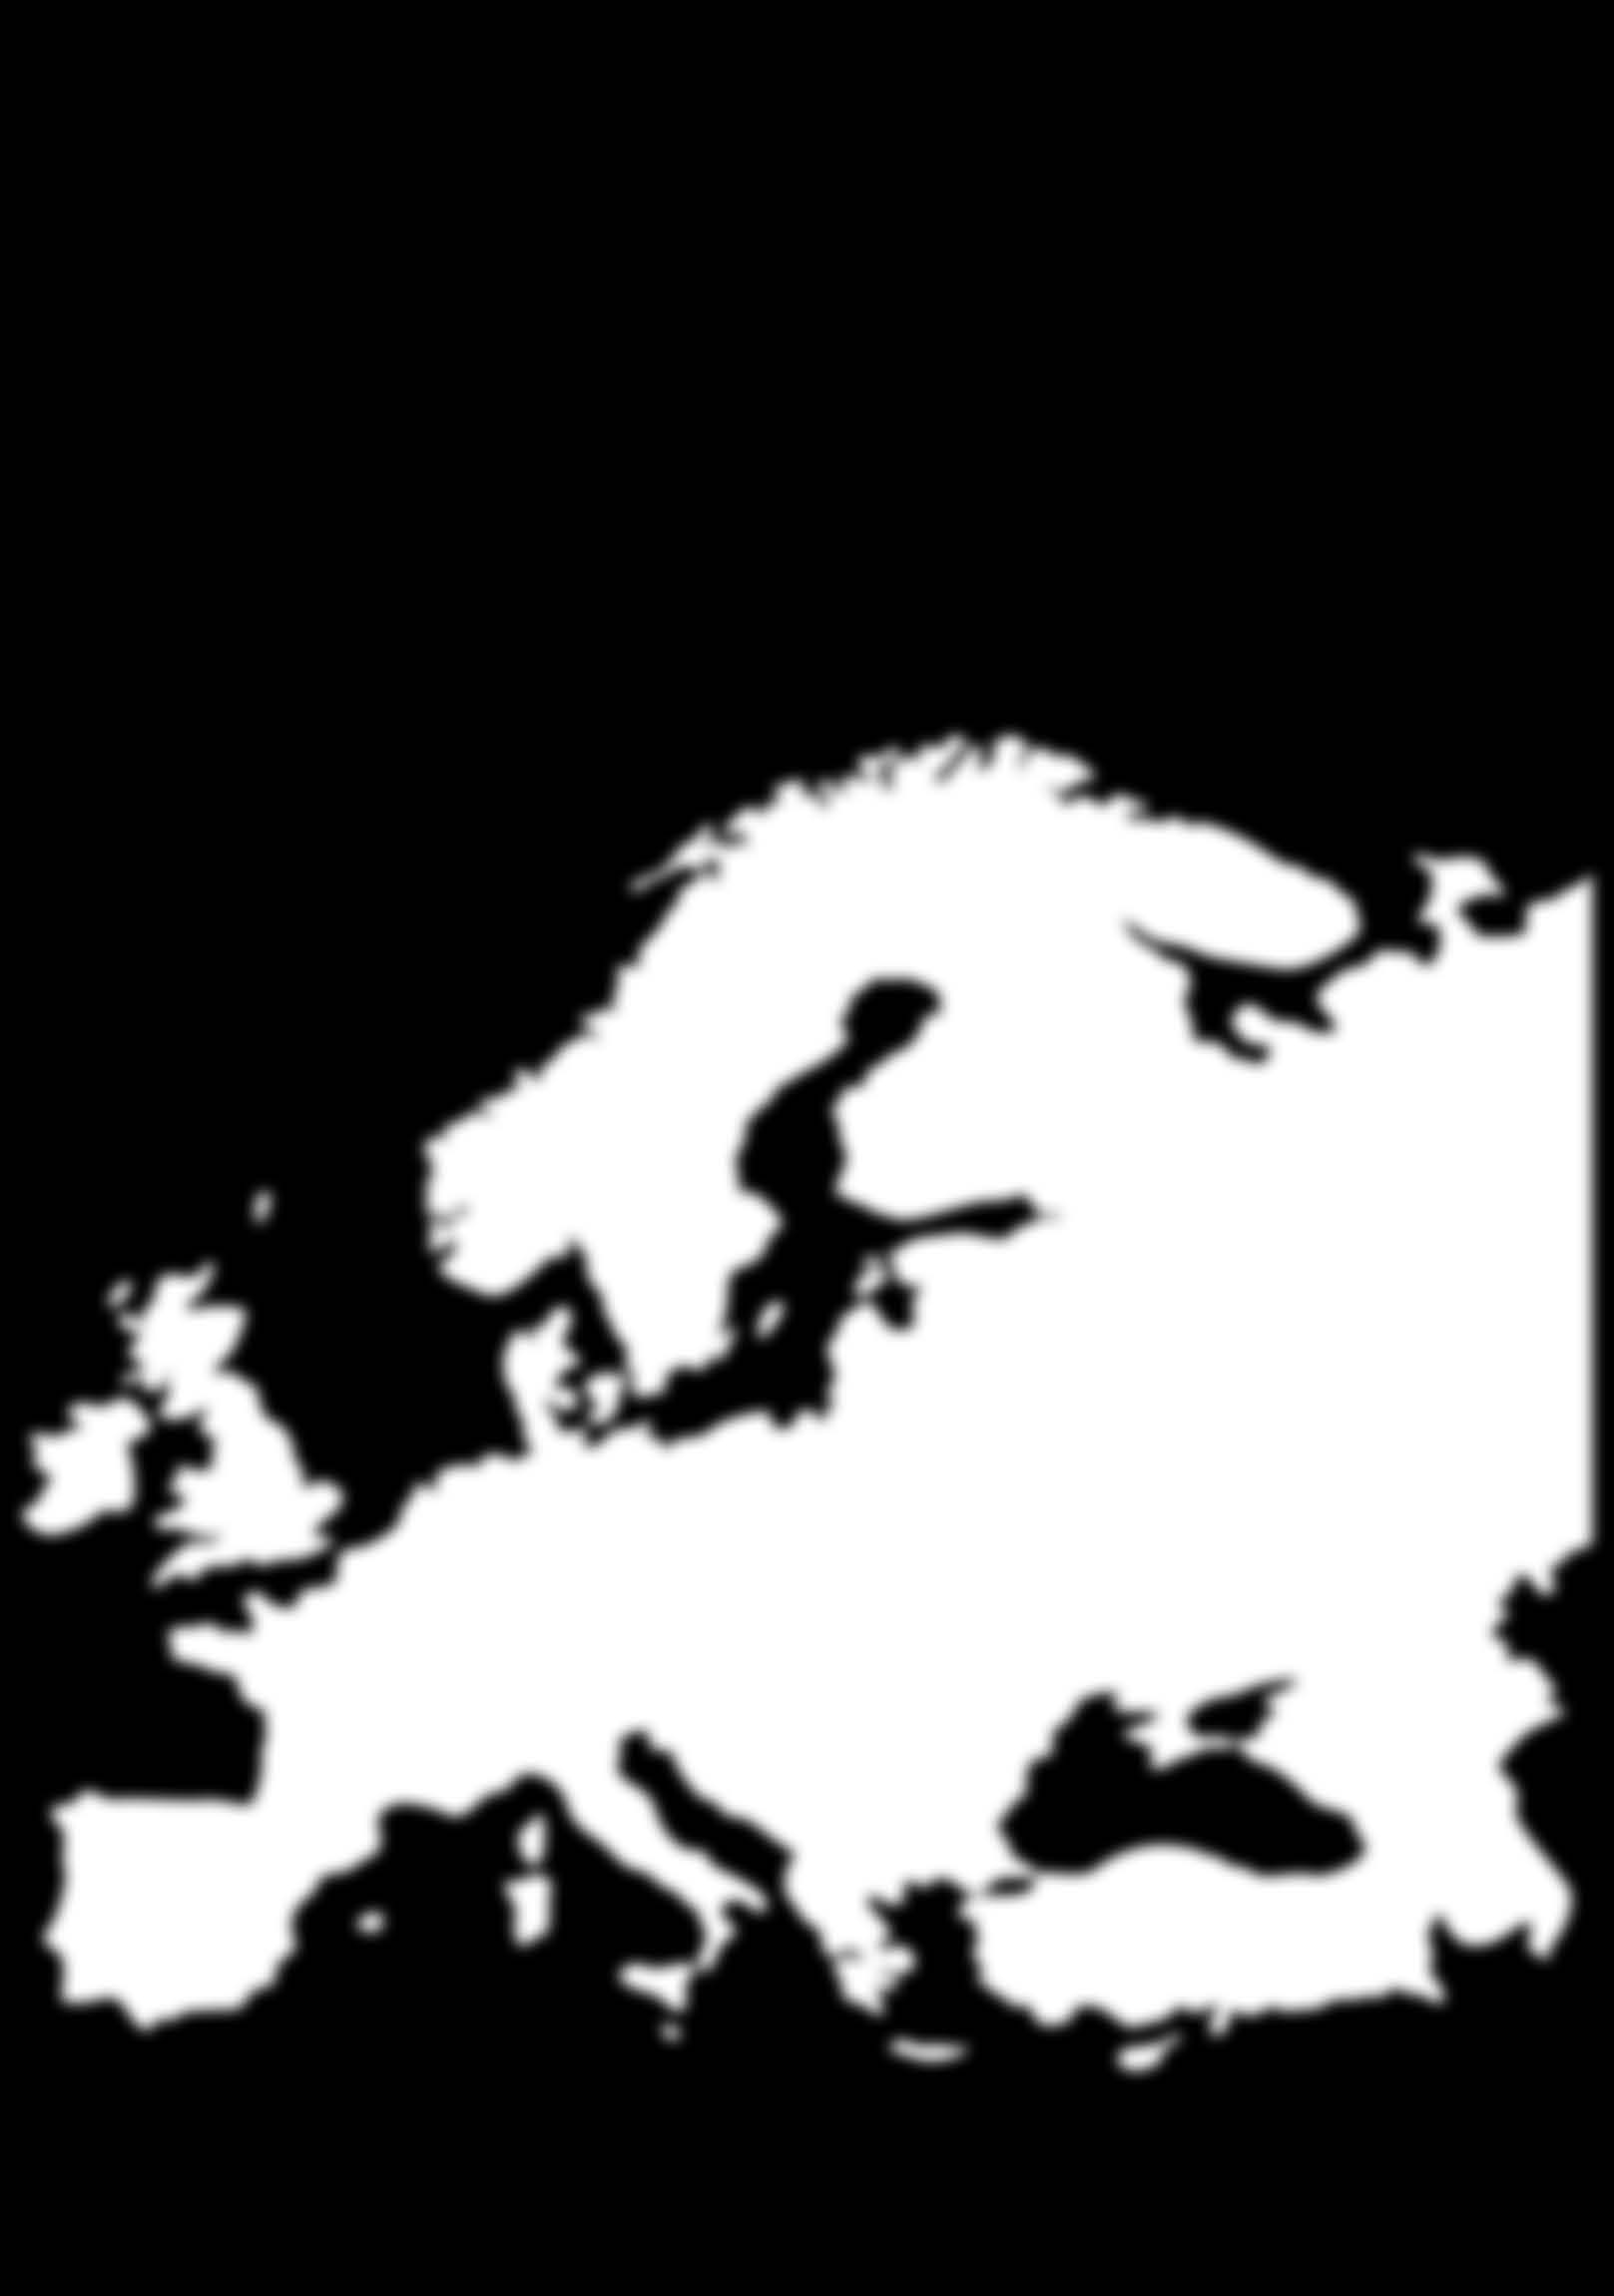 Winterreifen-Vorschriften für schwere Nutzfahrzeuge in Europa n n n n Länder ohne Winterreifenpflicht Länder mit regionaler Winterreifen- / Kettenpflicht Länder mit Winterreifenpflicht und / oder